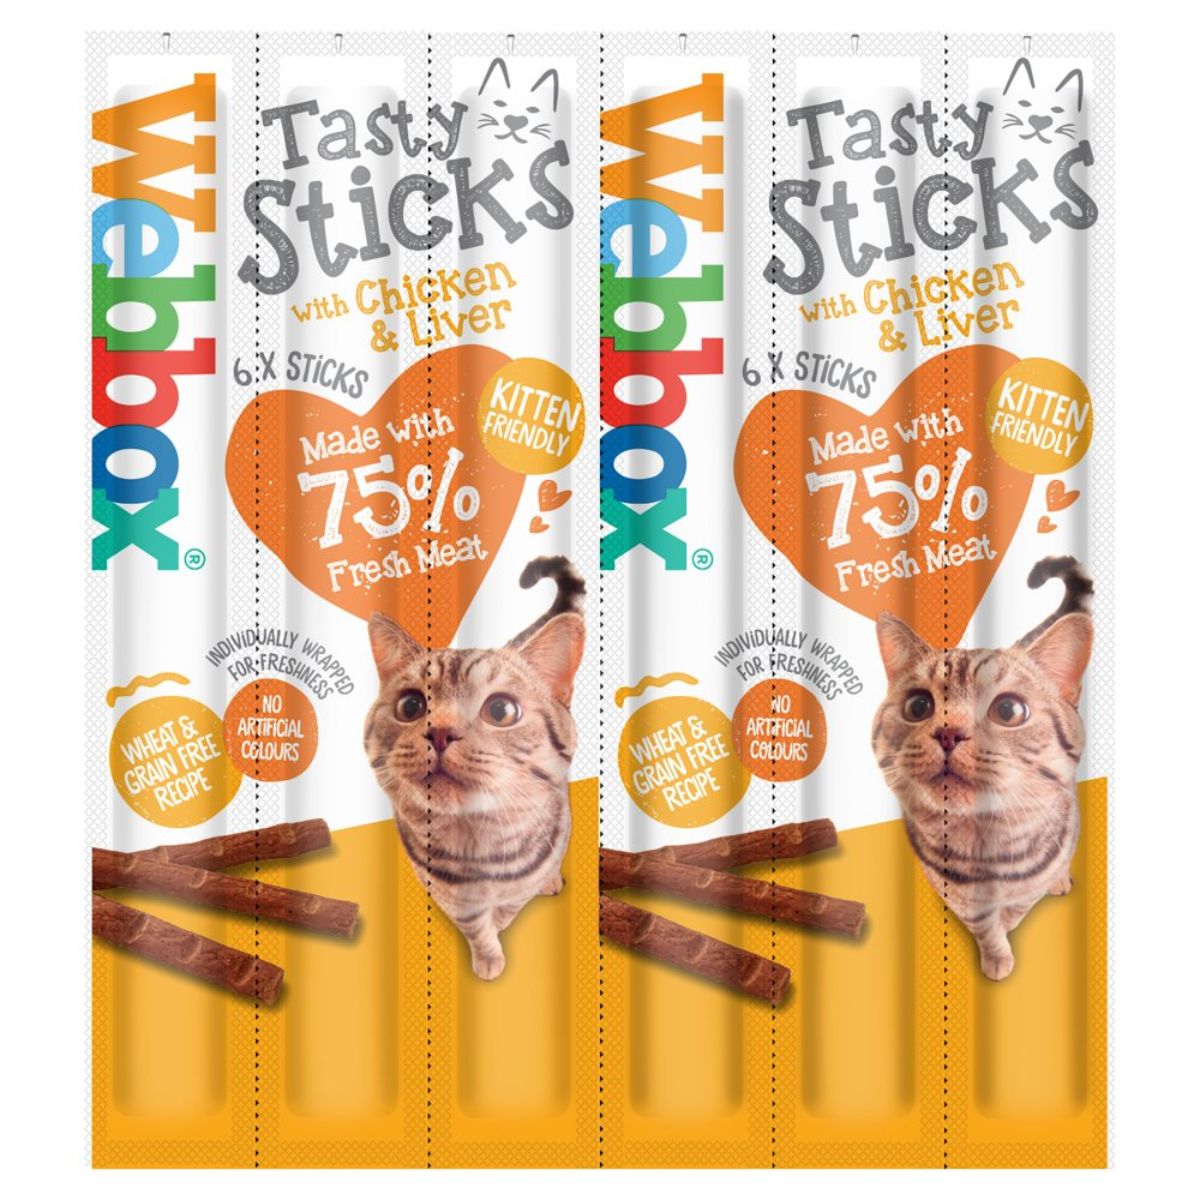 Webox tasty sticks & chicken. -> Webbox - Cat Sticks Chicken & Liver Treats - 6 Sticks.